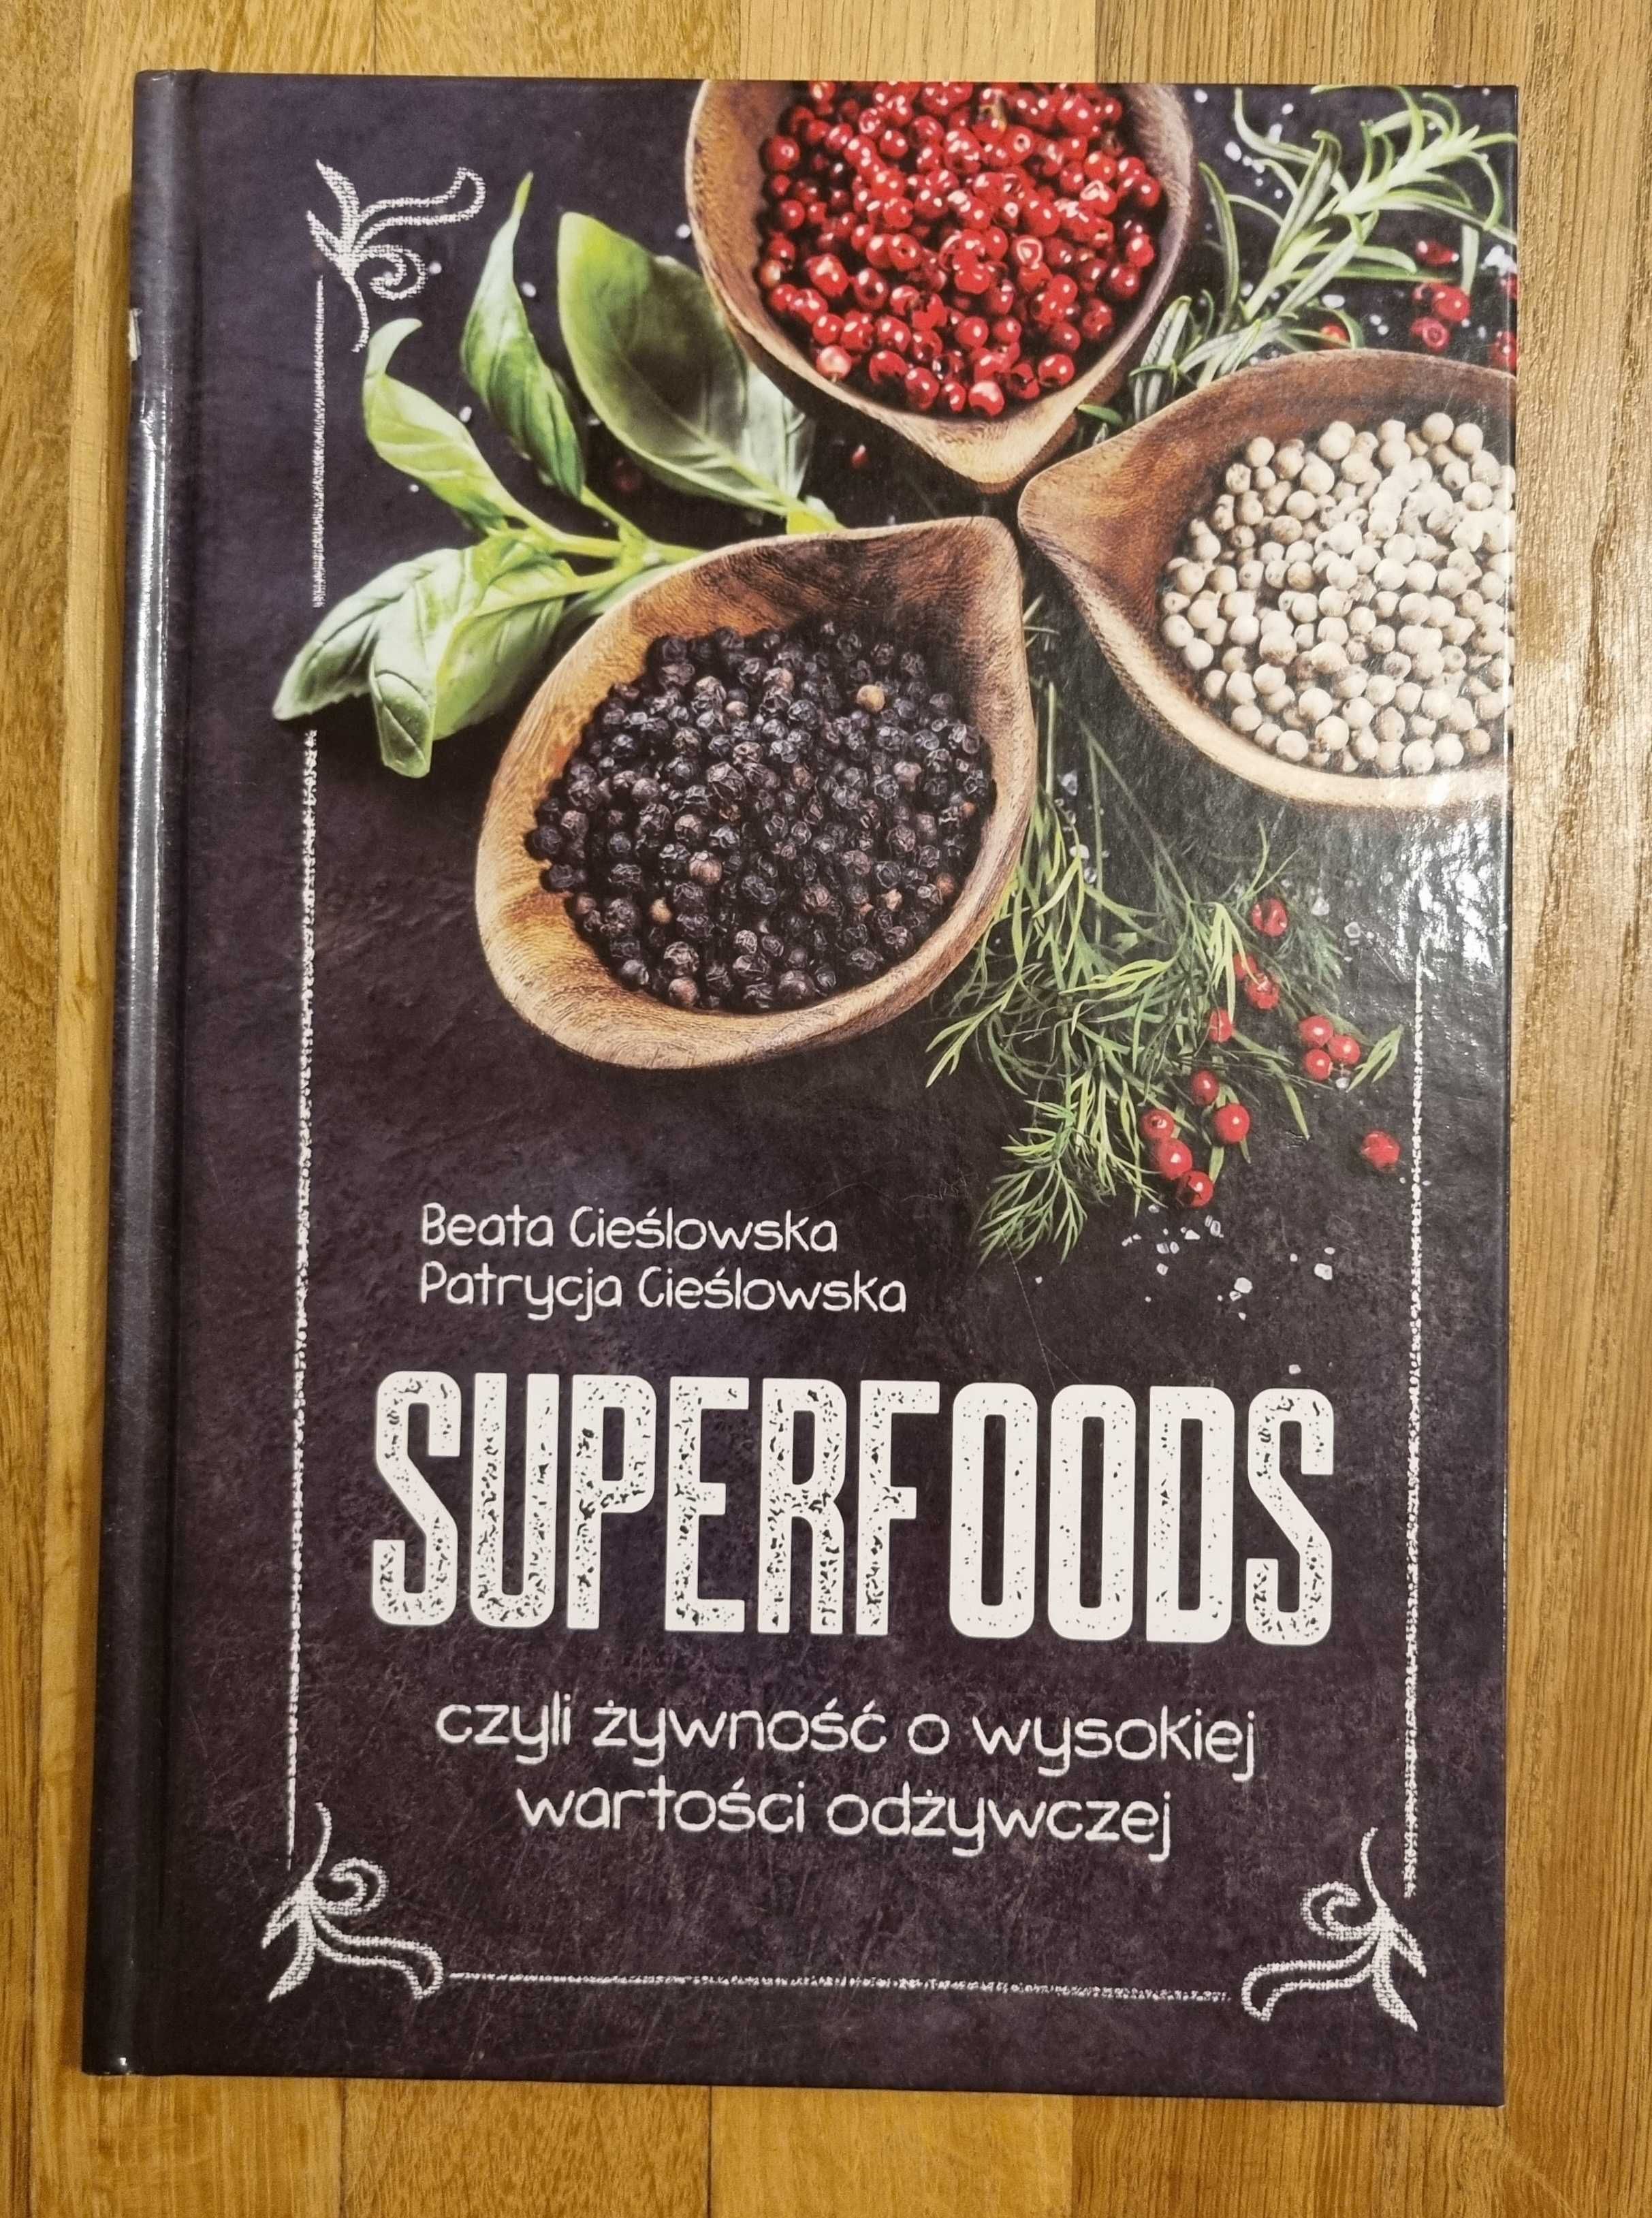 Superfoods Cieślowska